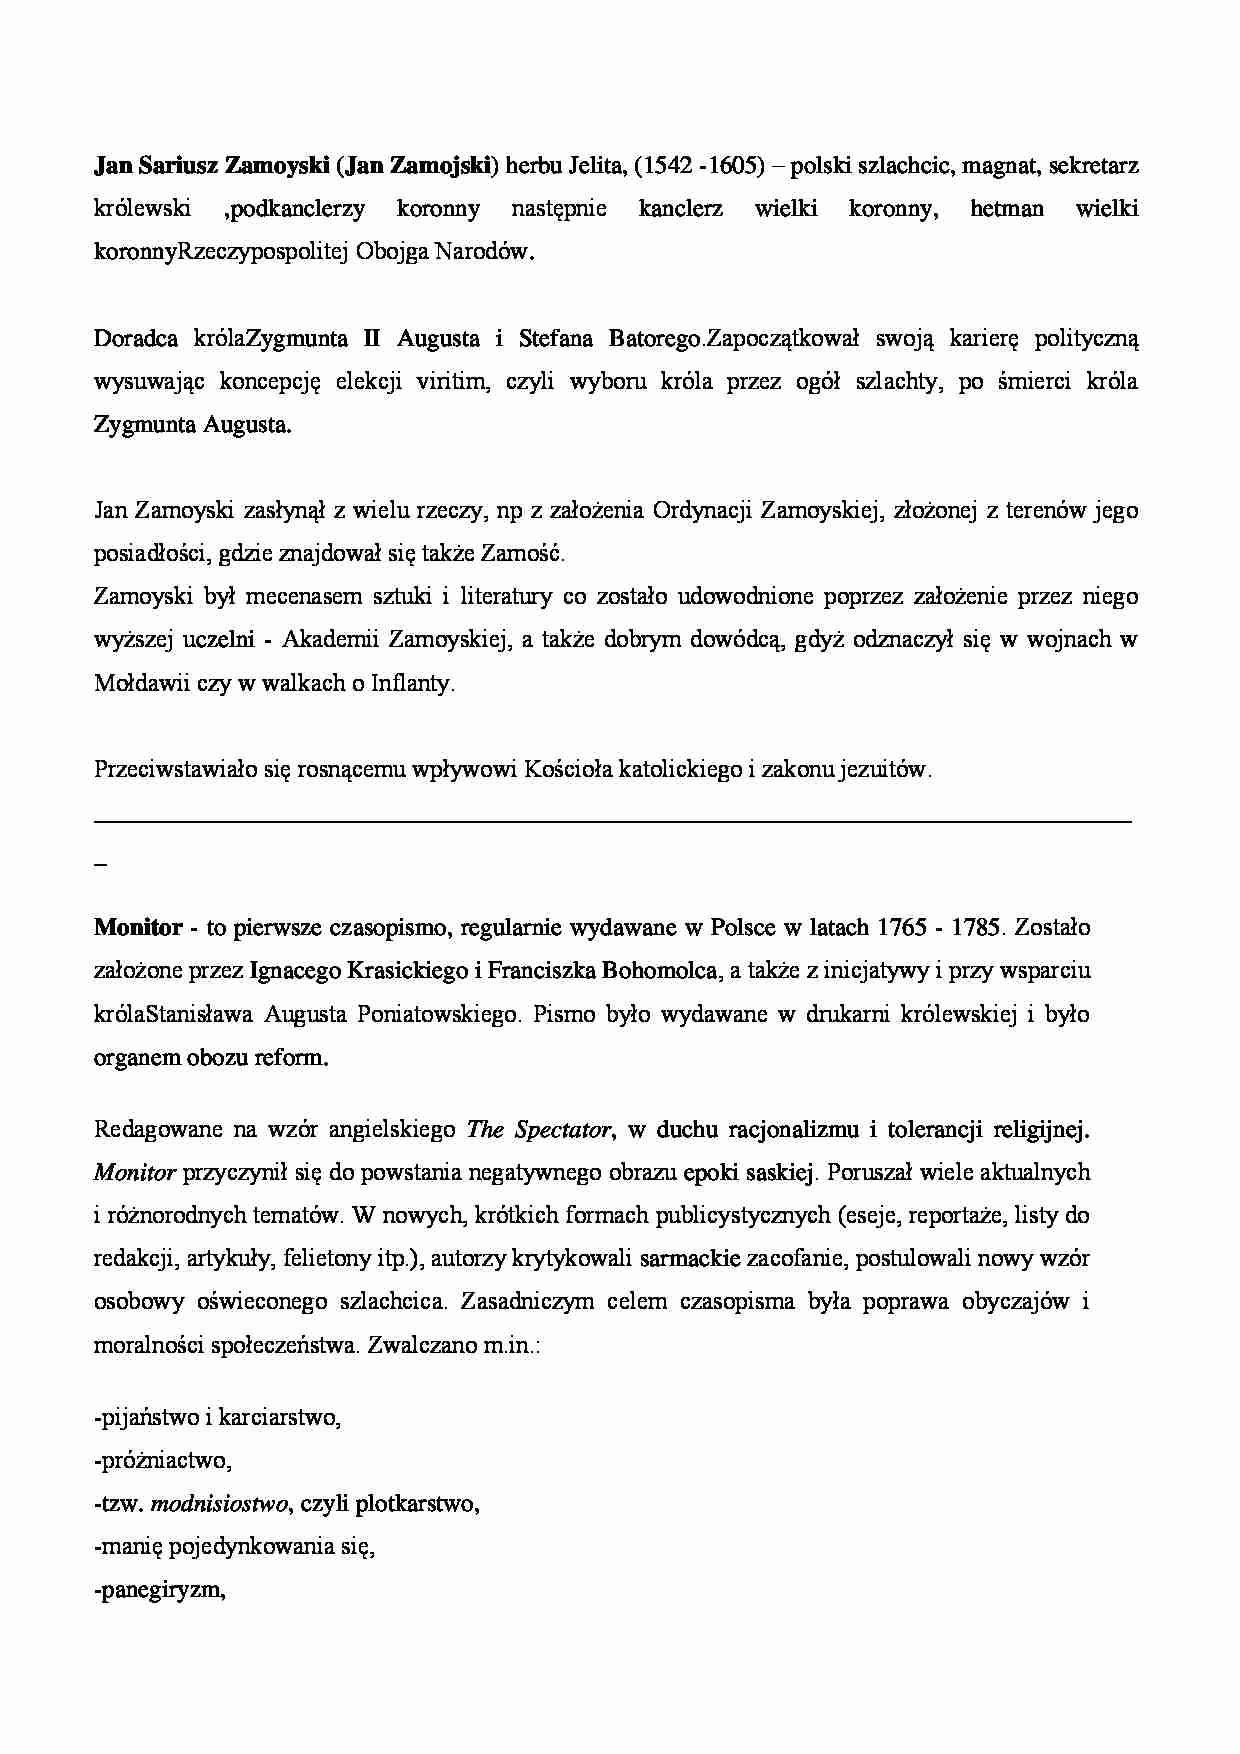 Jan Sariusz Zamoyski i Monitor - życiorys - strona 1